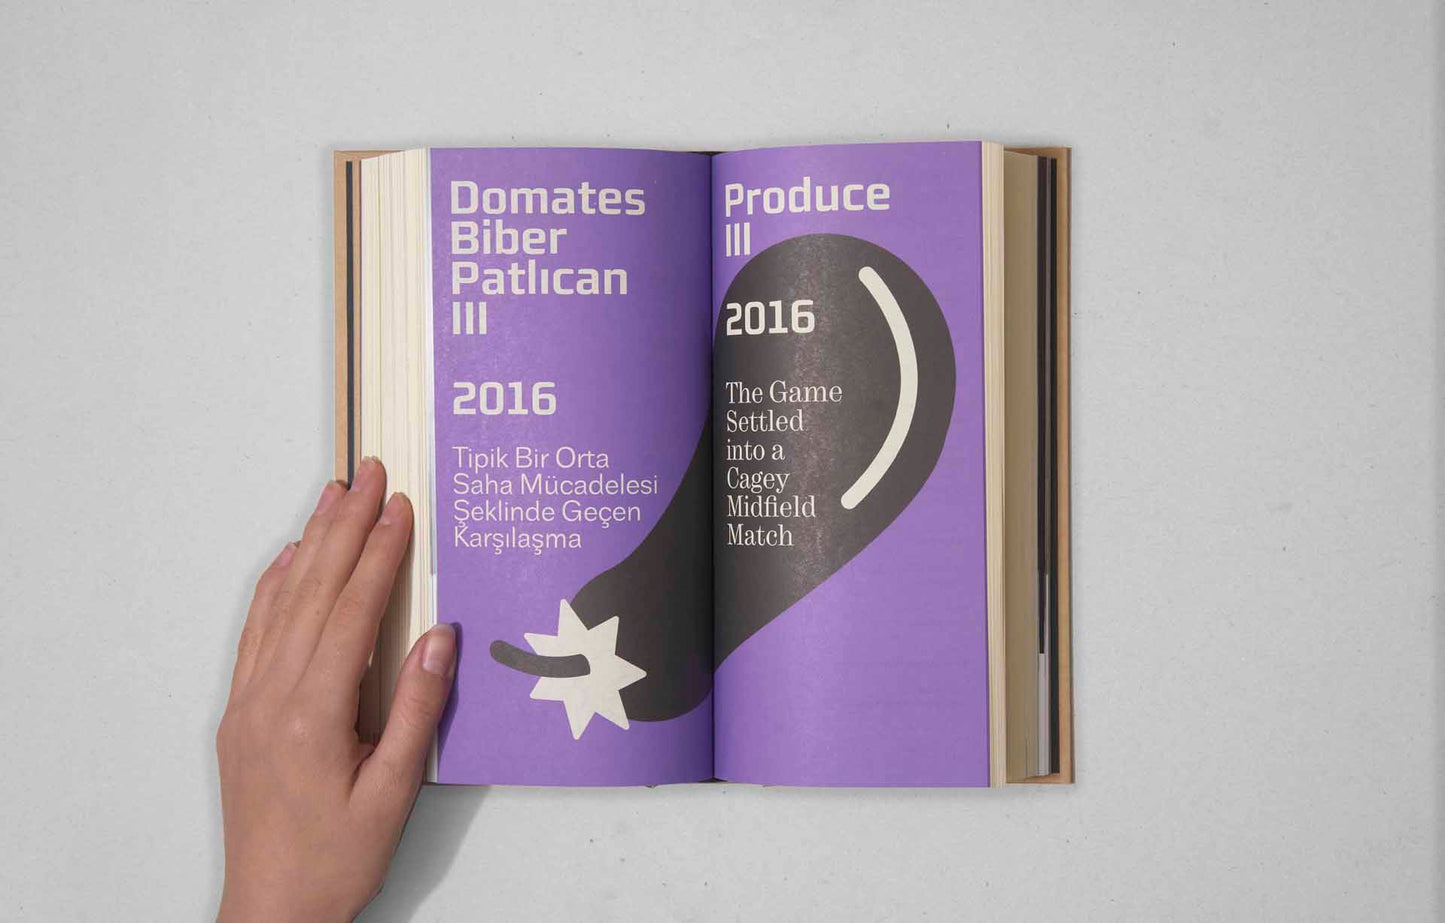 Domates Biber Patlıcan: Bir Etkinliğin Külliyatı 2012-2016 / The PRODUCE: The Compendium of an Event 2012-2016